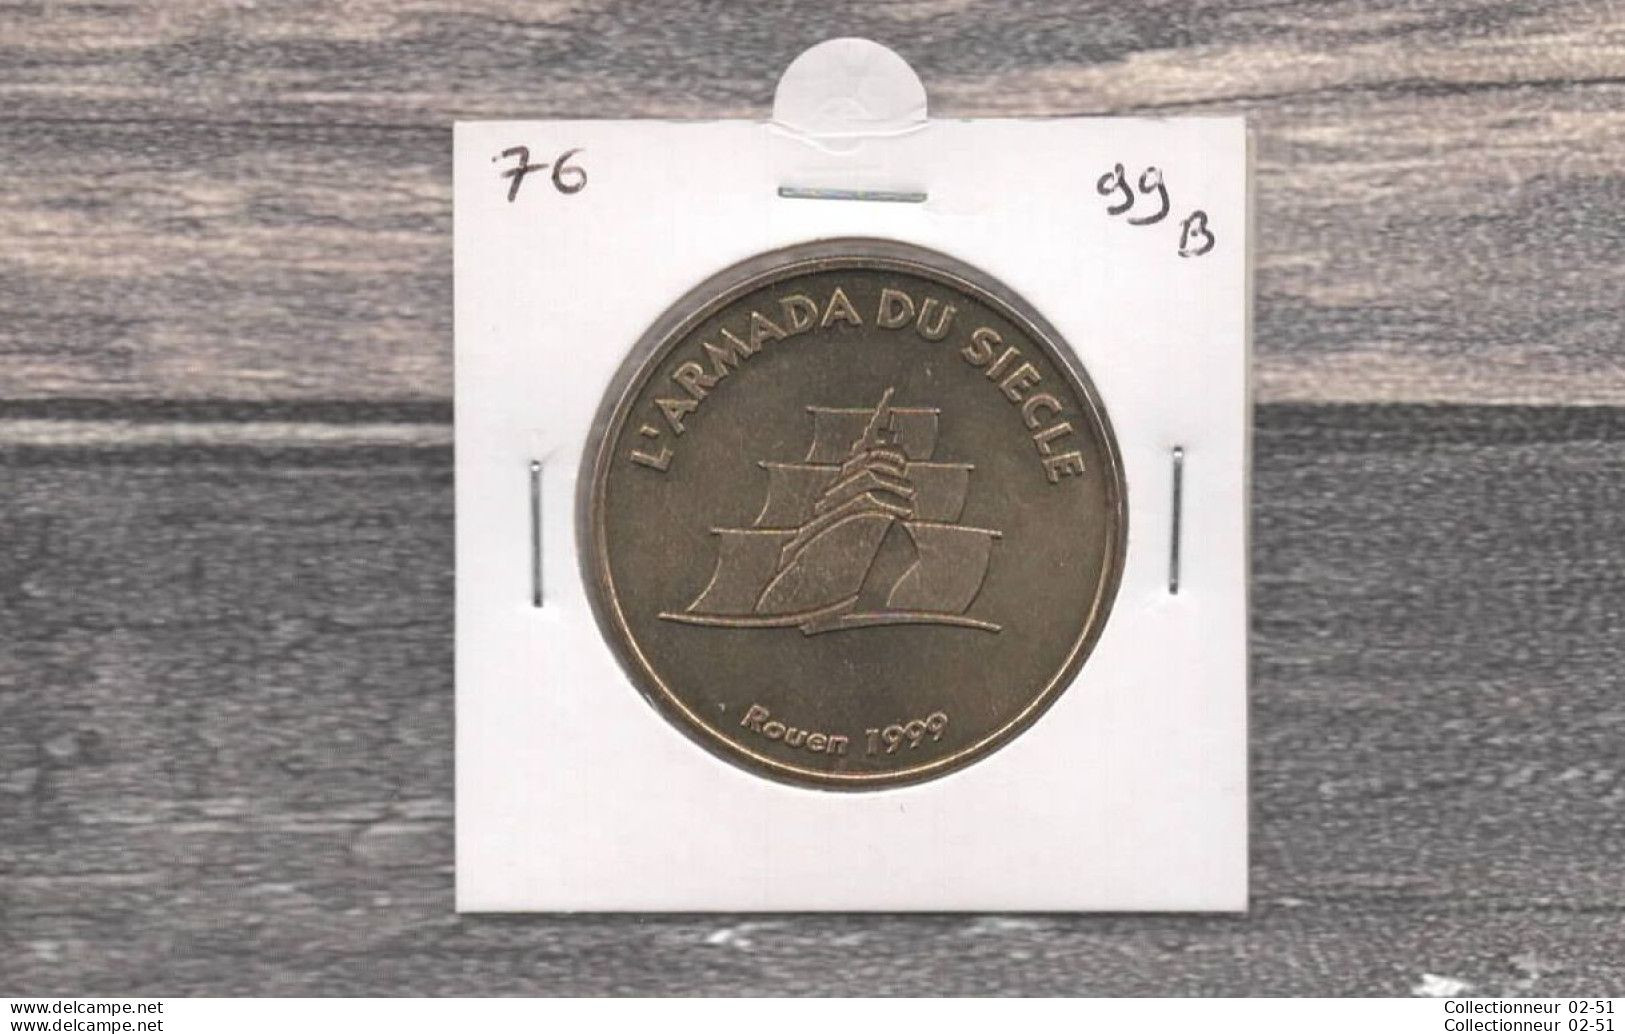 Monnaie De Paris : L'Armada Du Siècle - 1999 - Ohne Datum